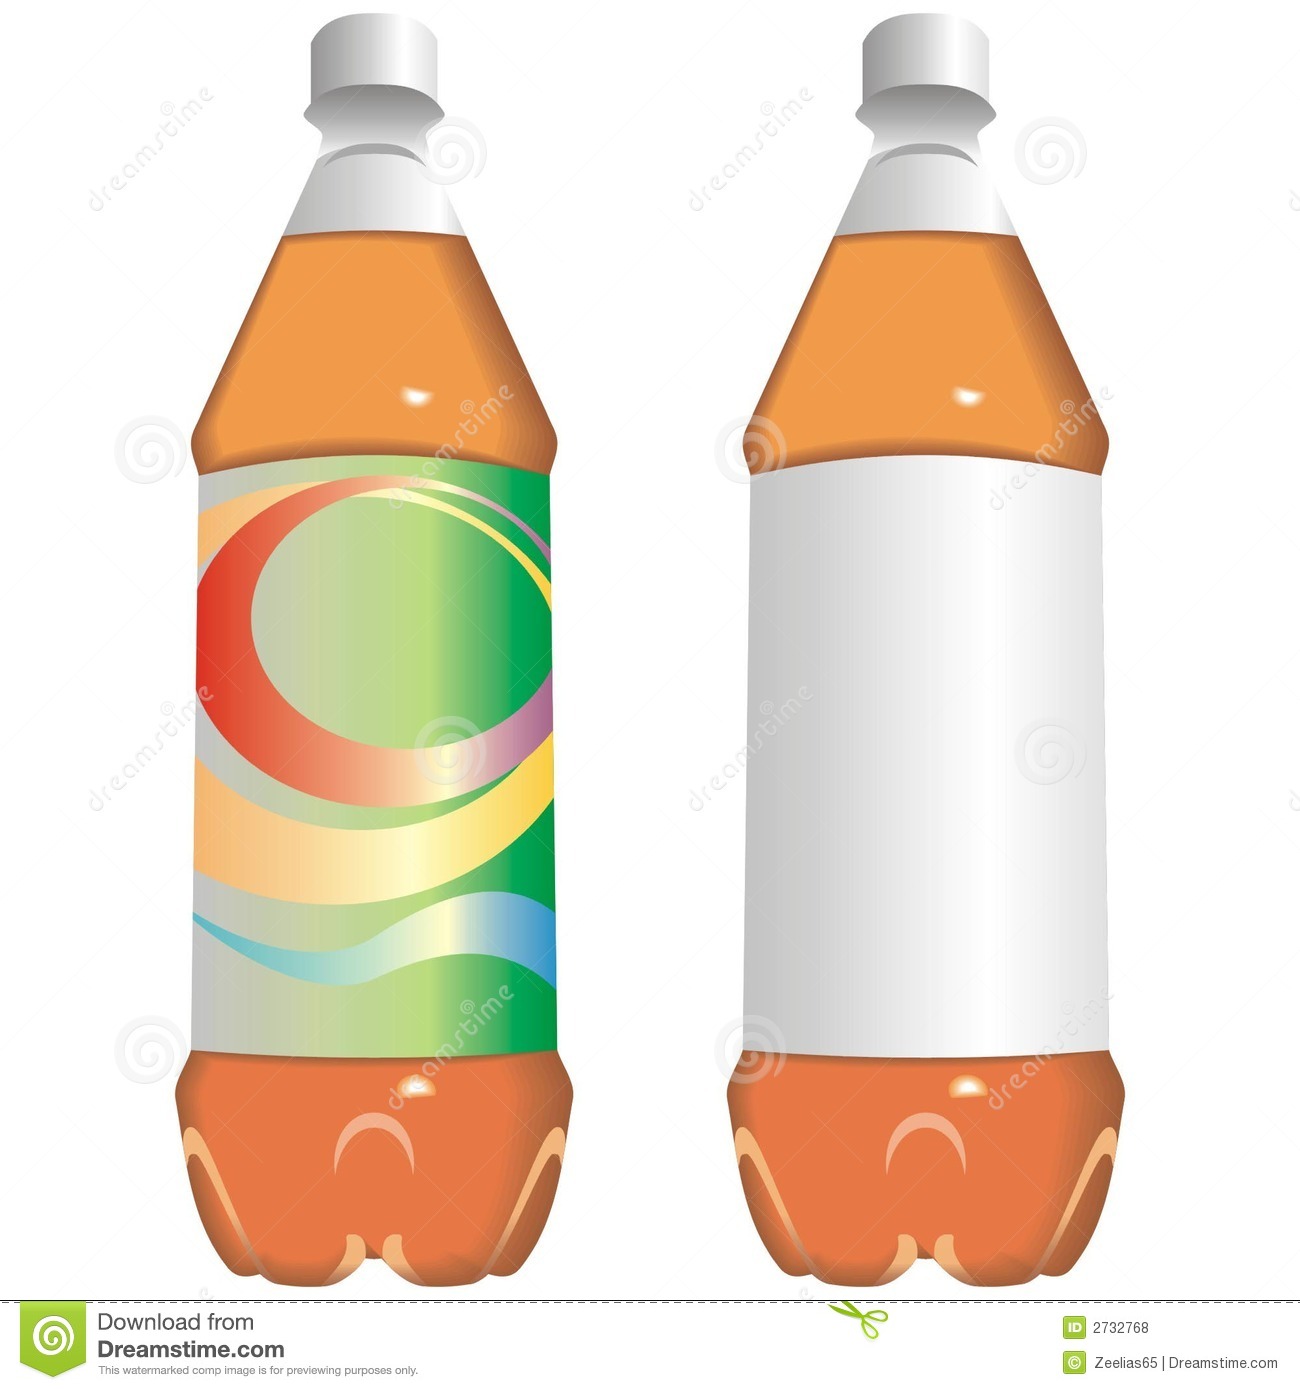 Art Illustration Of A Bottle Of Juice Or Soft Drink